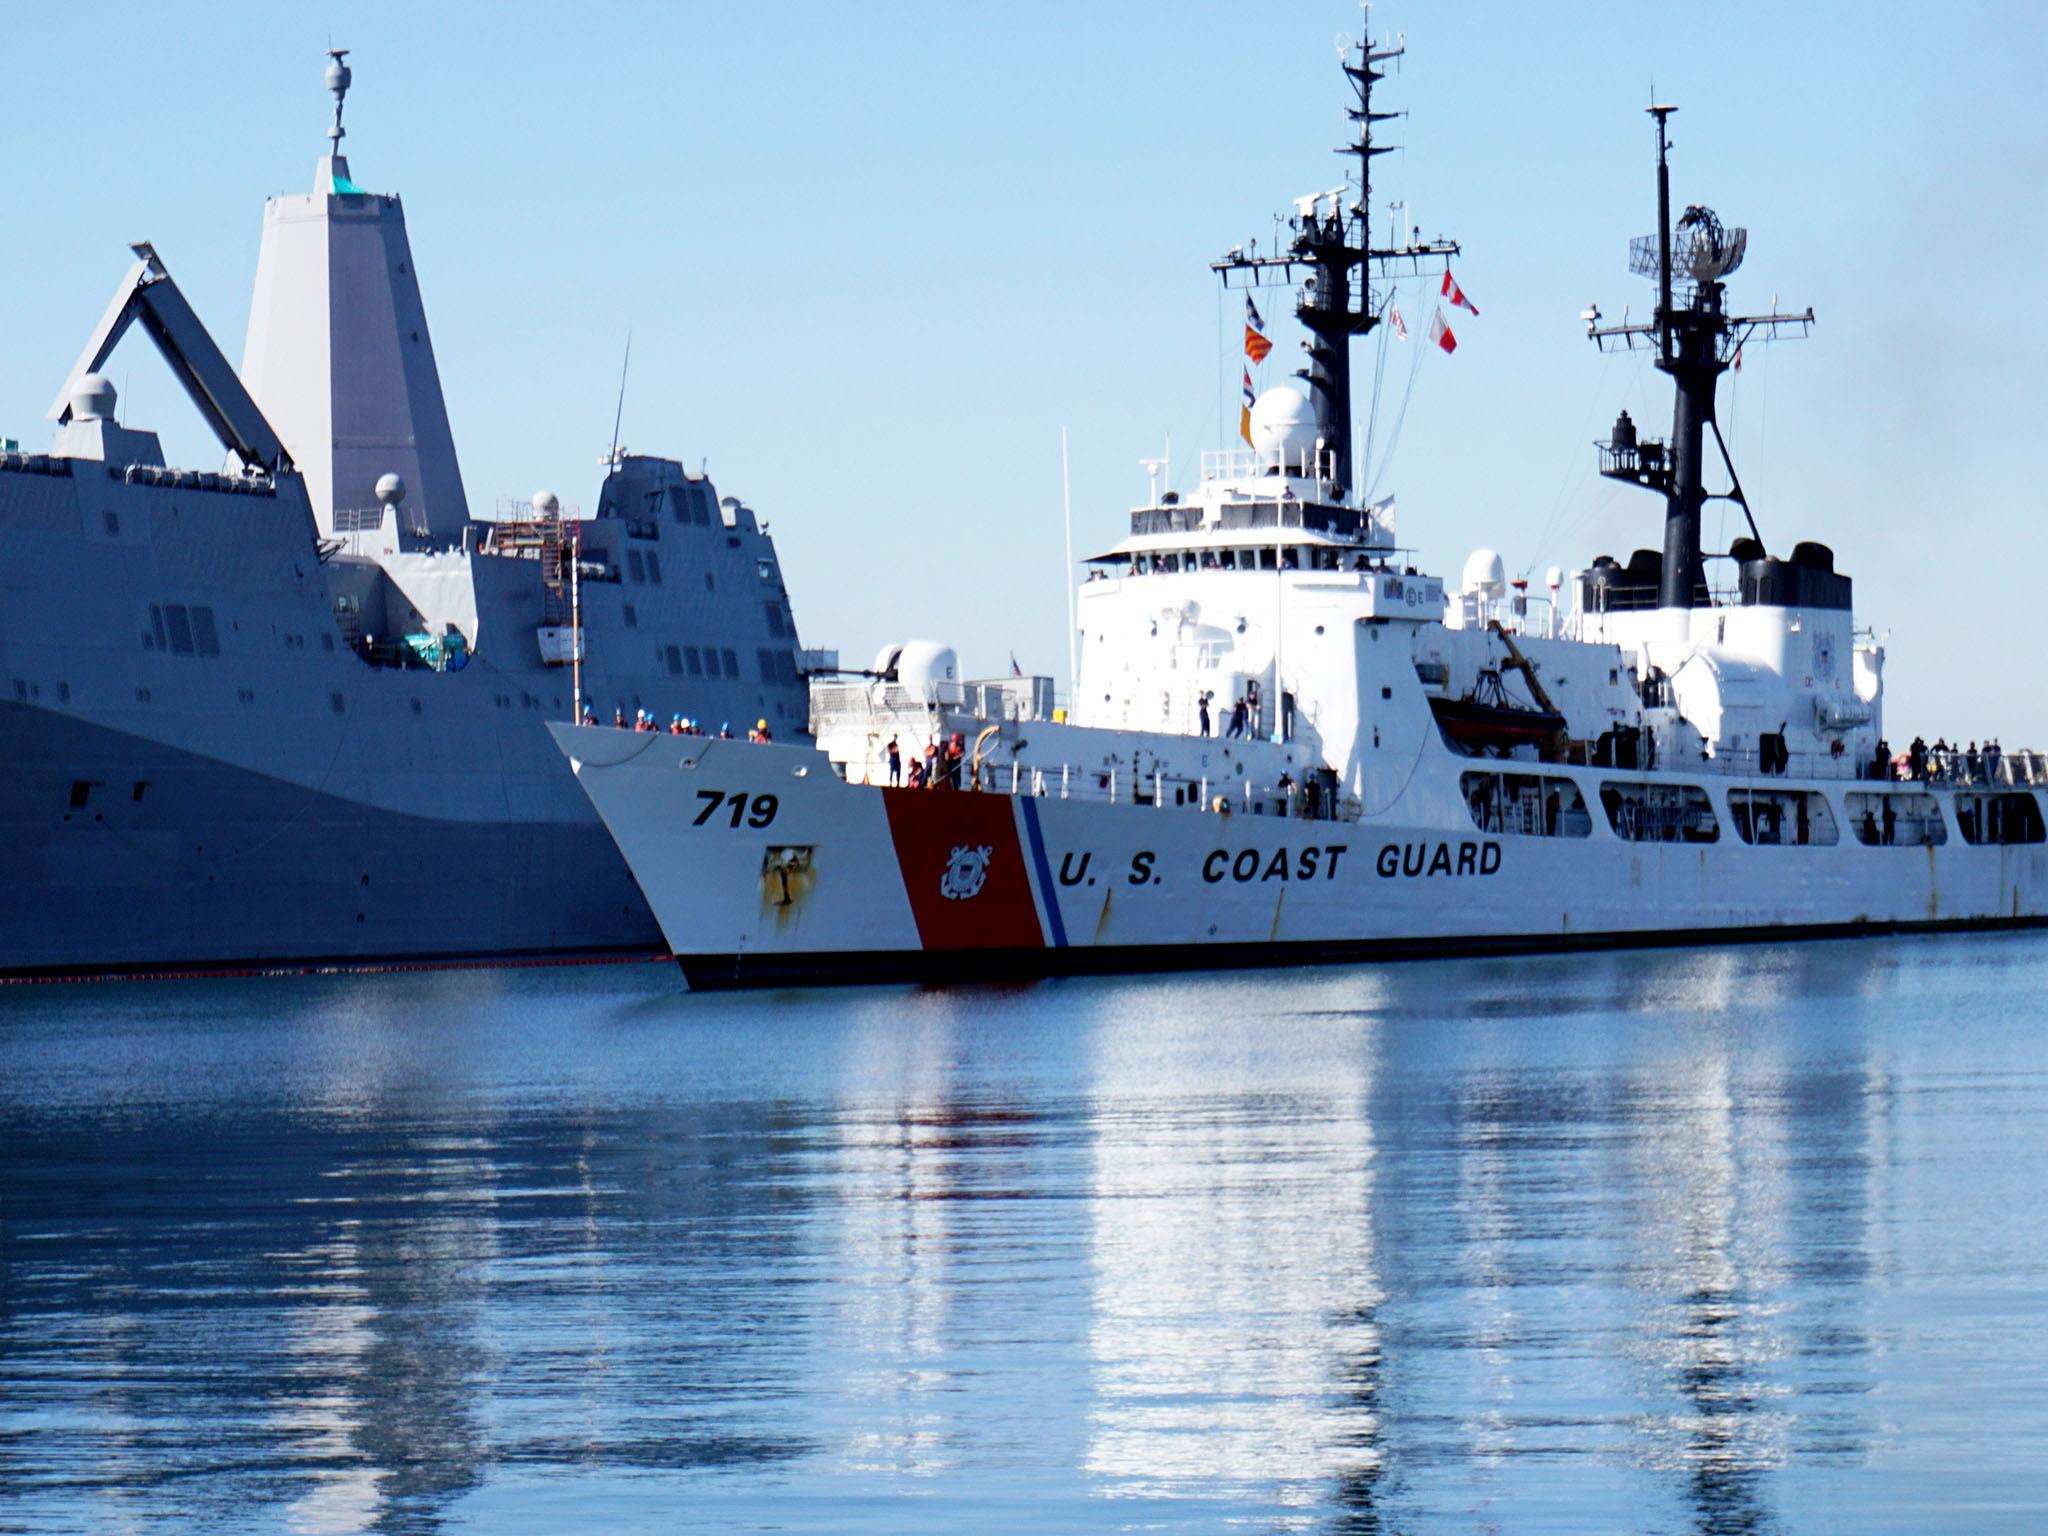 A Us Coast Guard ship